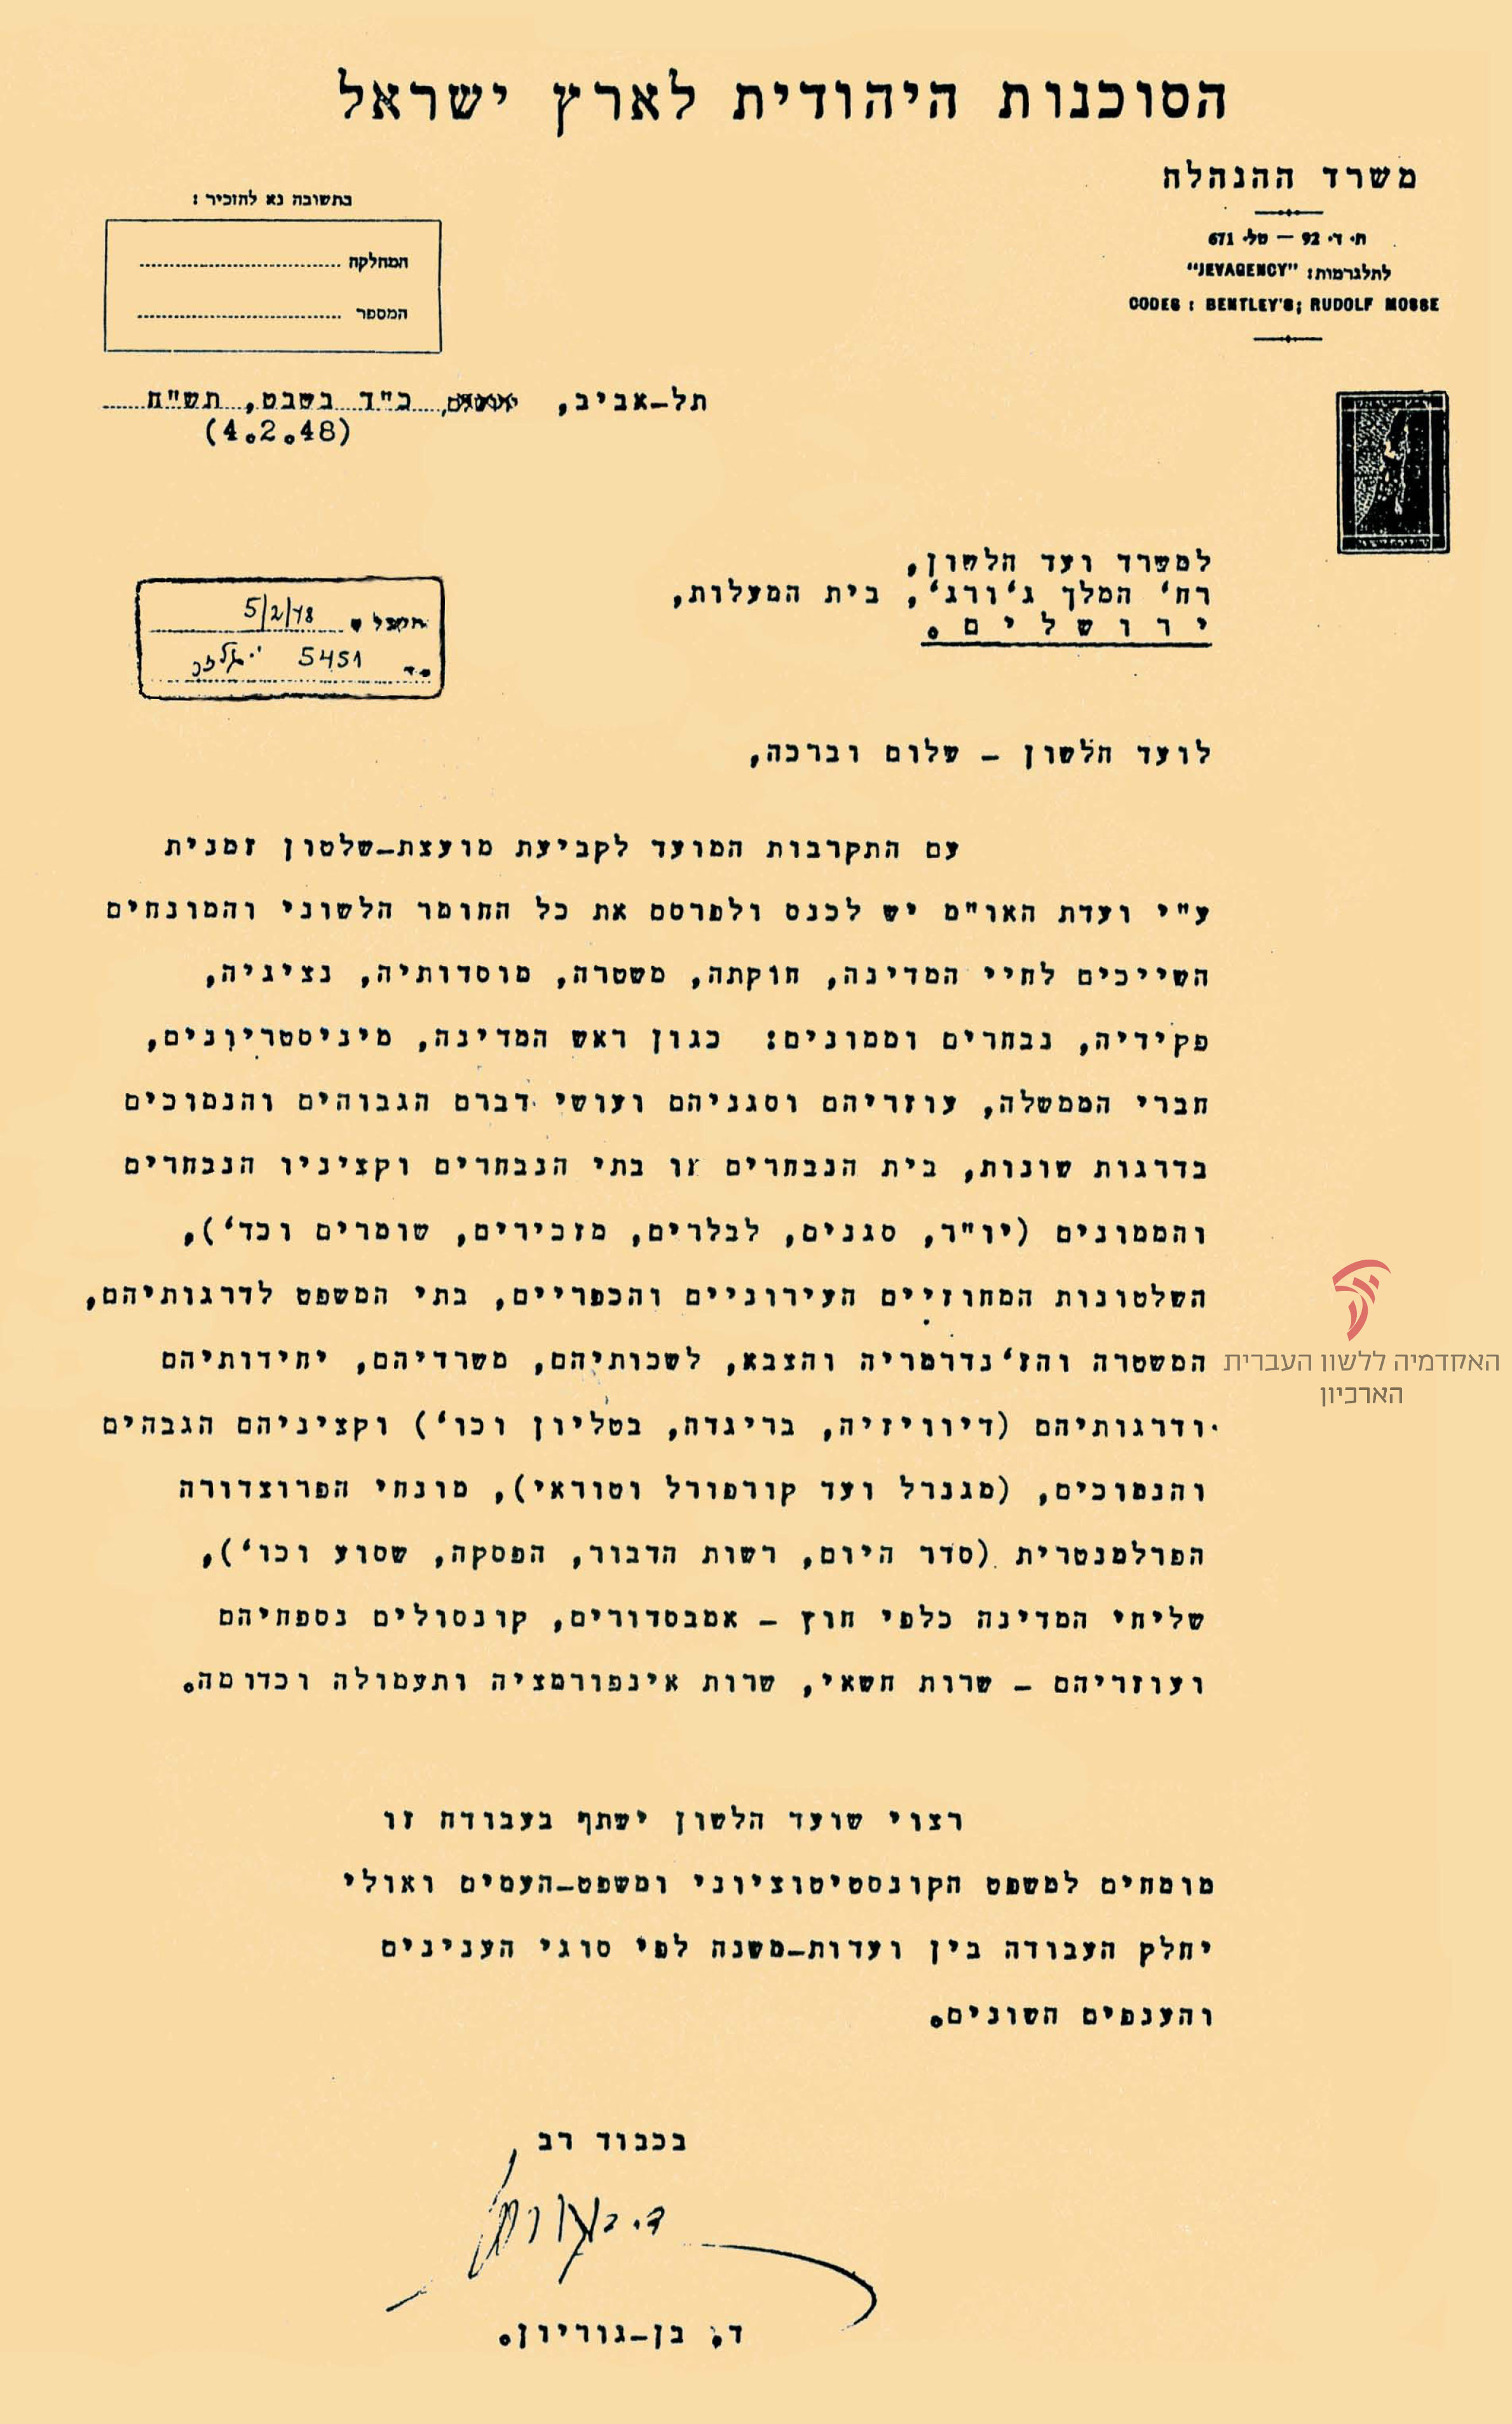 מכתב מדוד בן-גוריון לועד הלשון על הצורך לקבוע מונחי מדינה